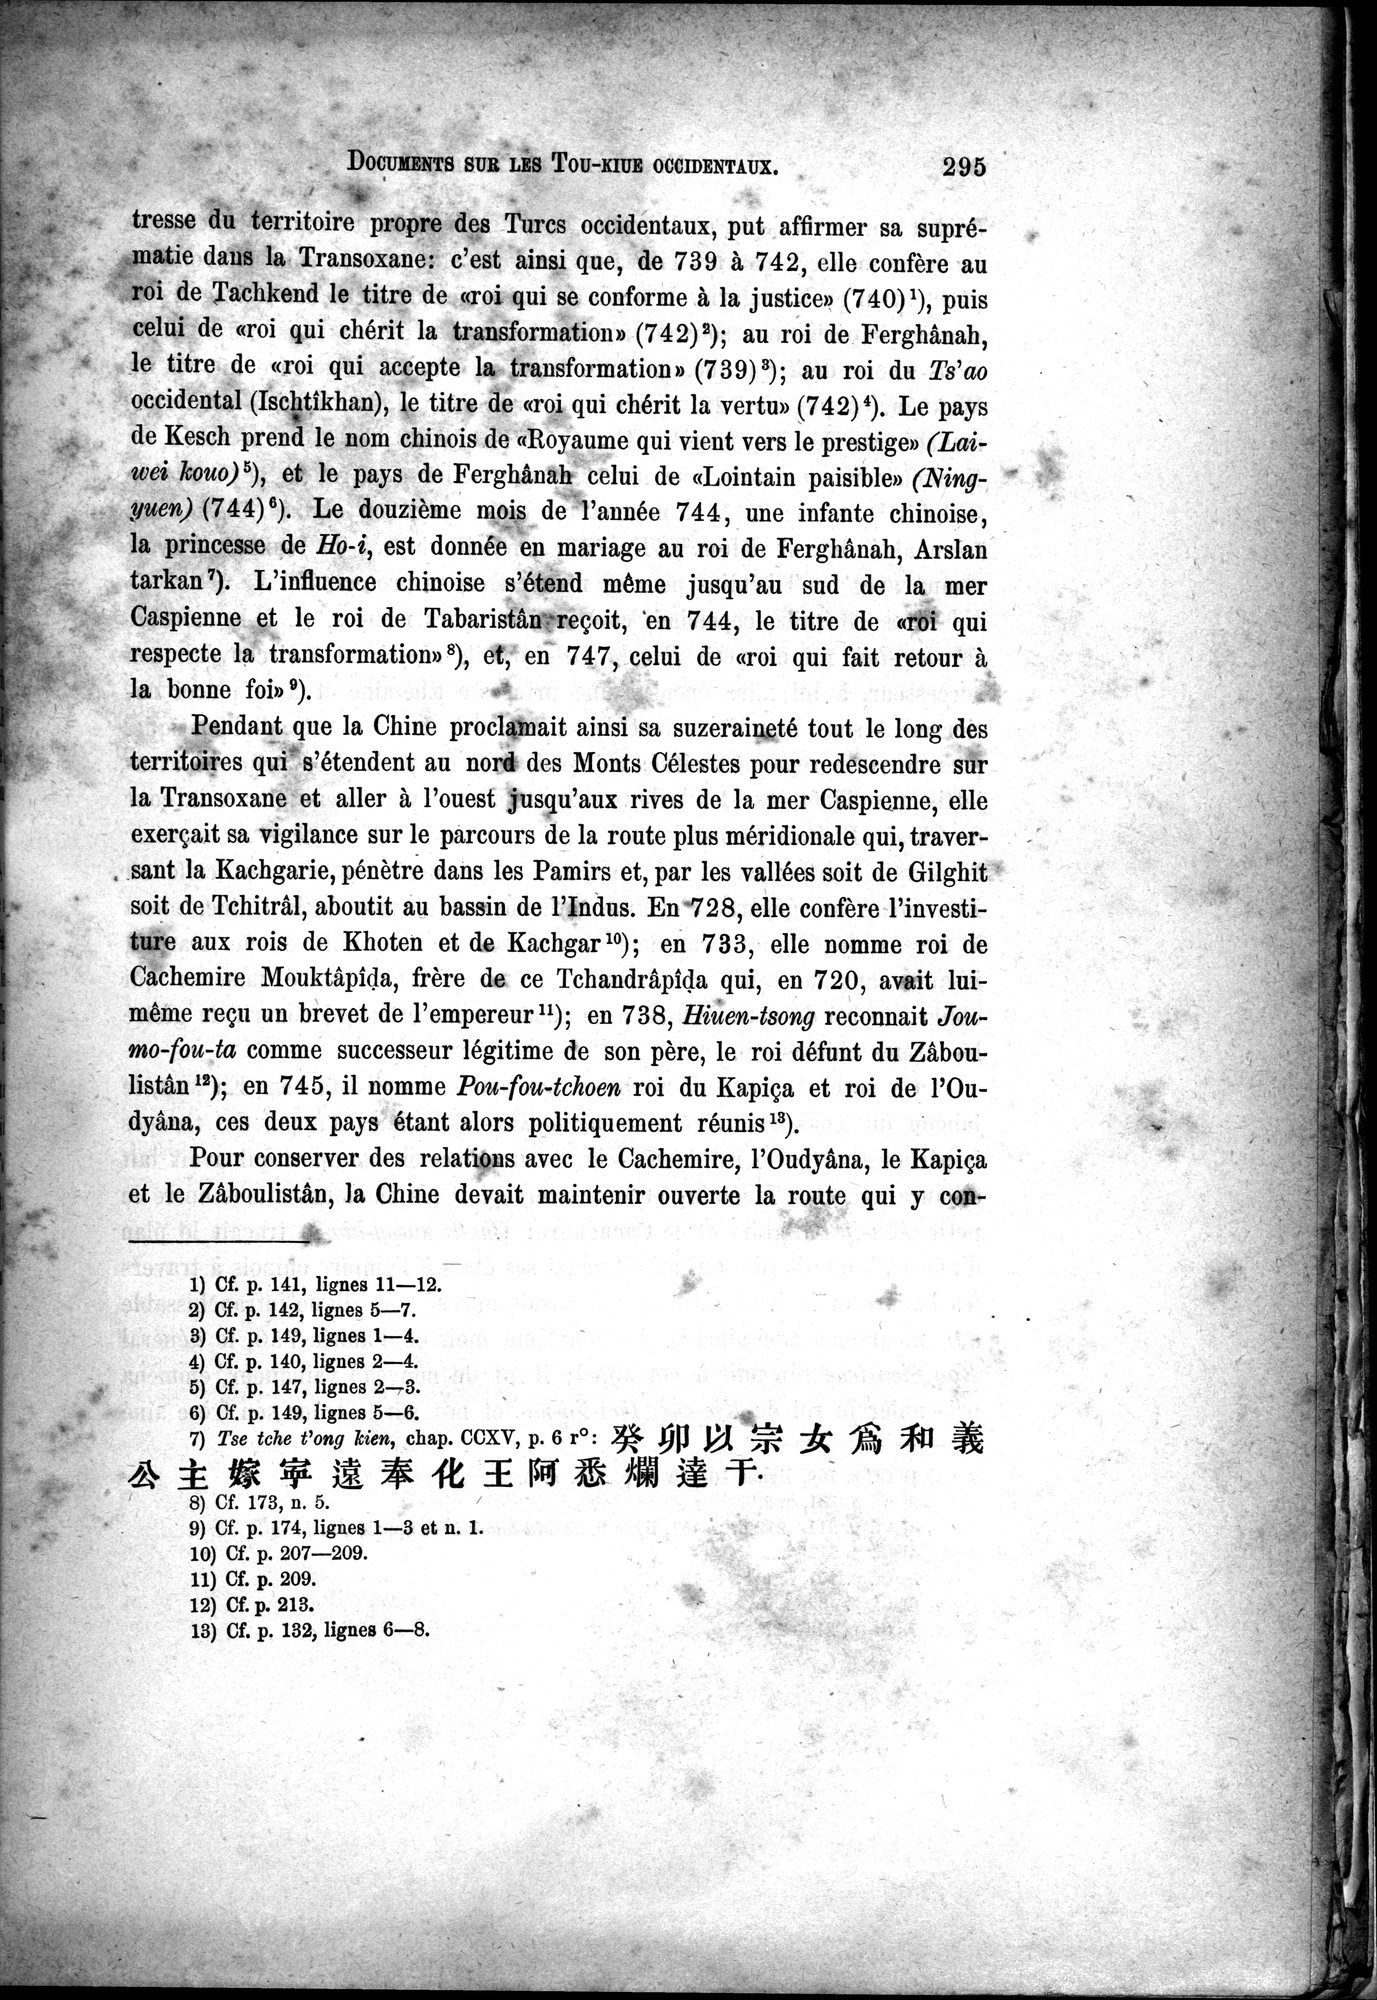 Documents sur les Tou-kiue (Turcs) occidentaux : vol.1 / Page 305 (Grayscale High Resolution Image)